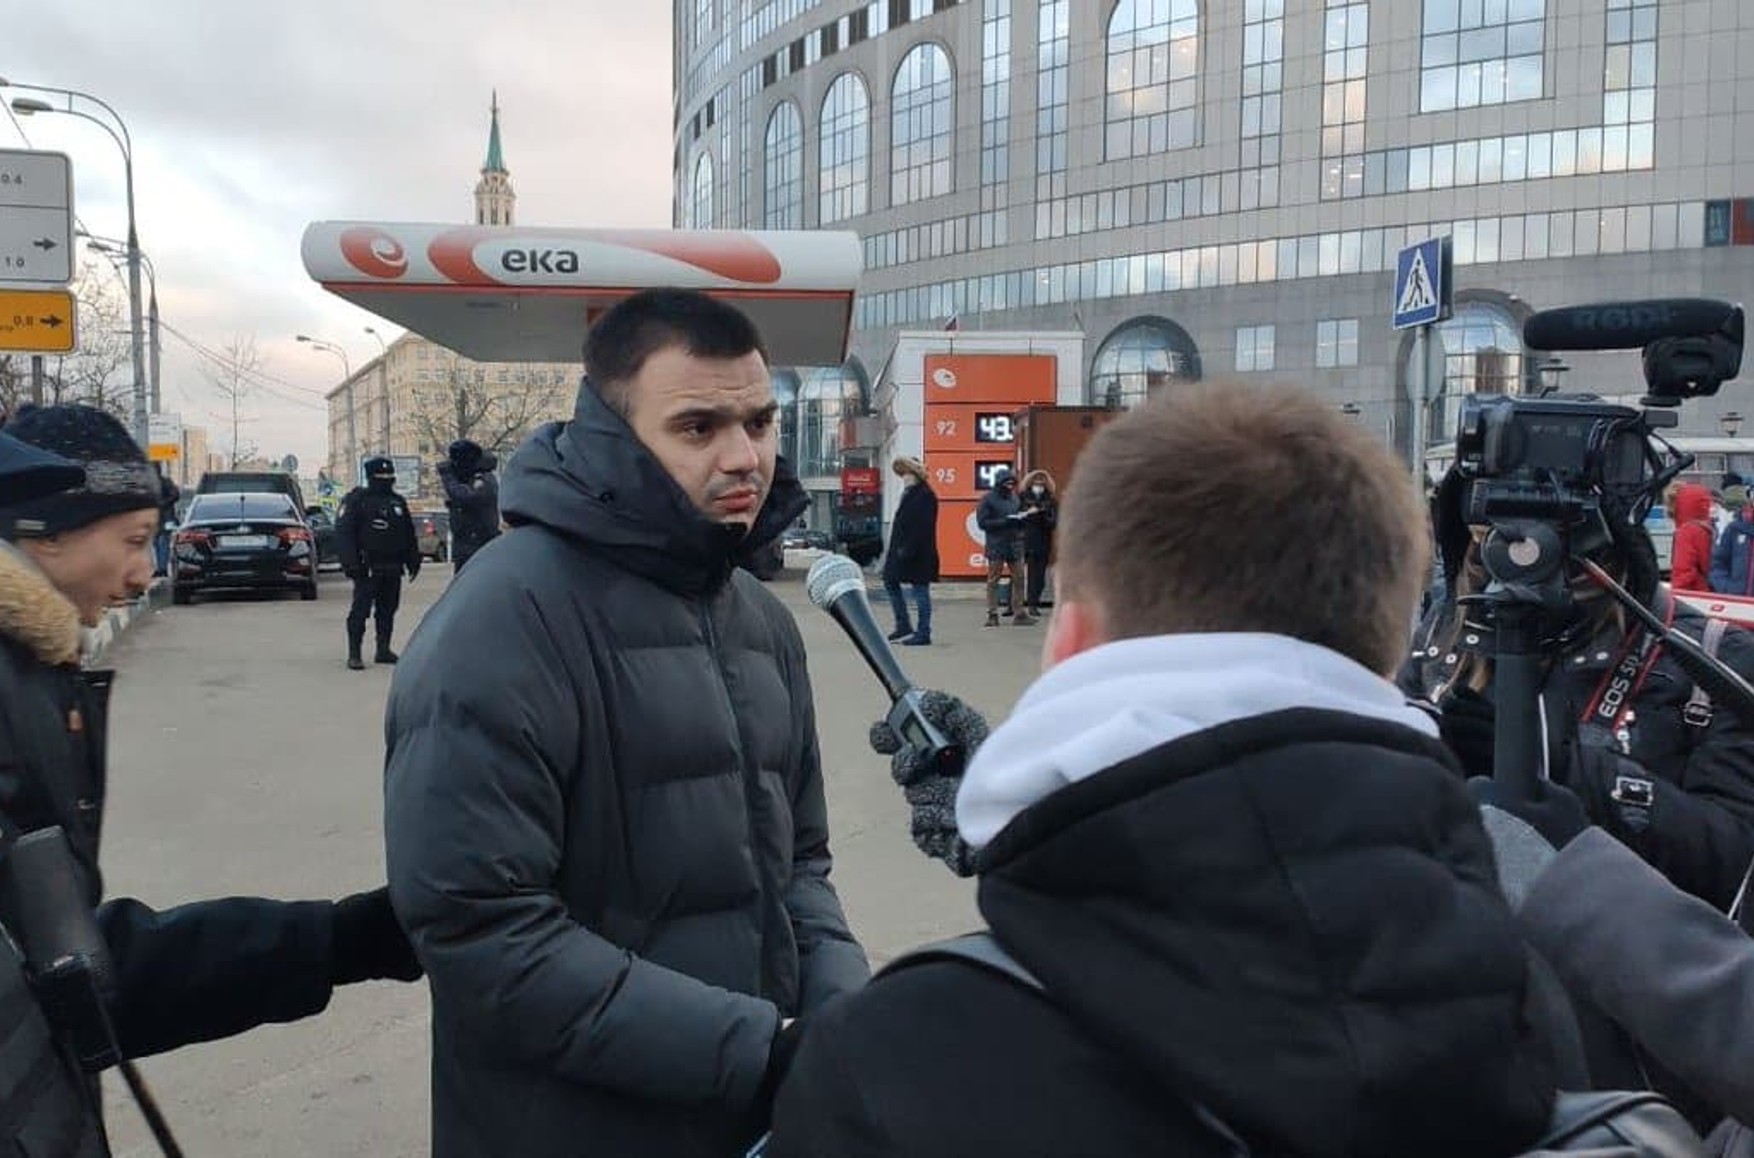 Співробітник ФБК Руслан Шаведдінов, який повернувся зі служби на Новій Землі, прийшов підтримати Юлію Галямін